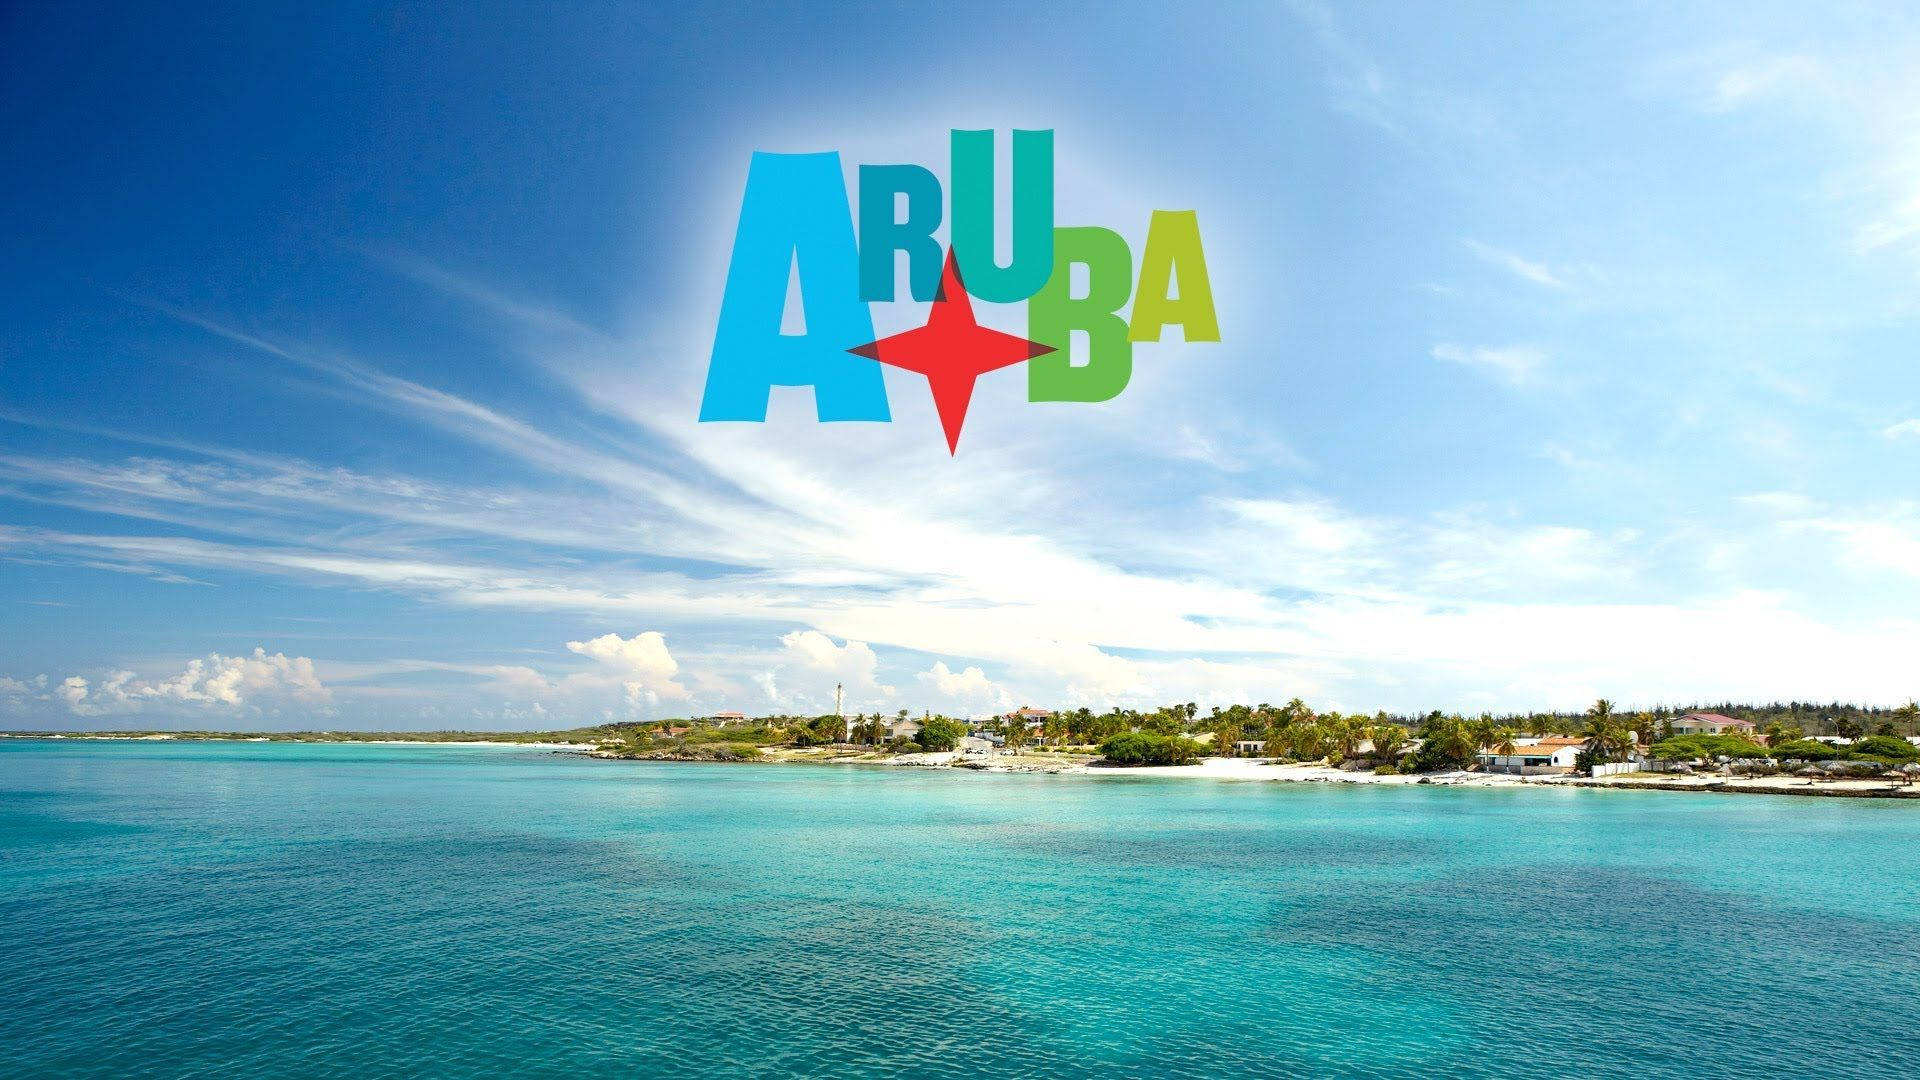 Plano De Fundo De Aruba